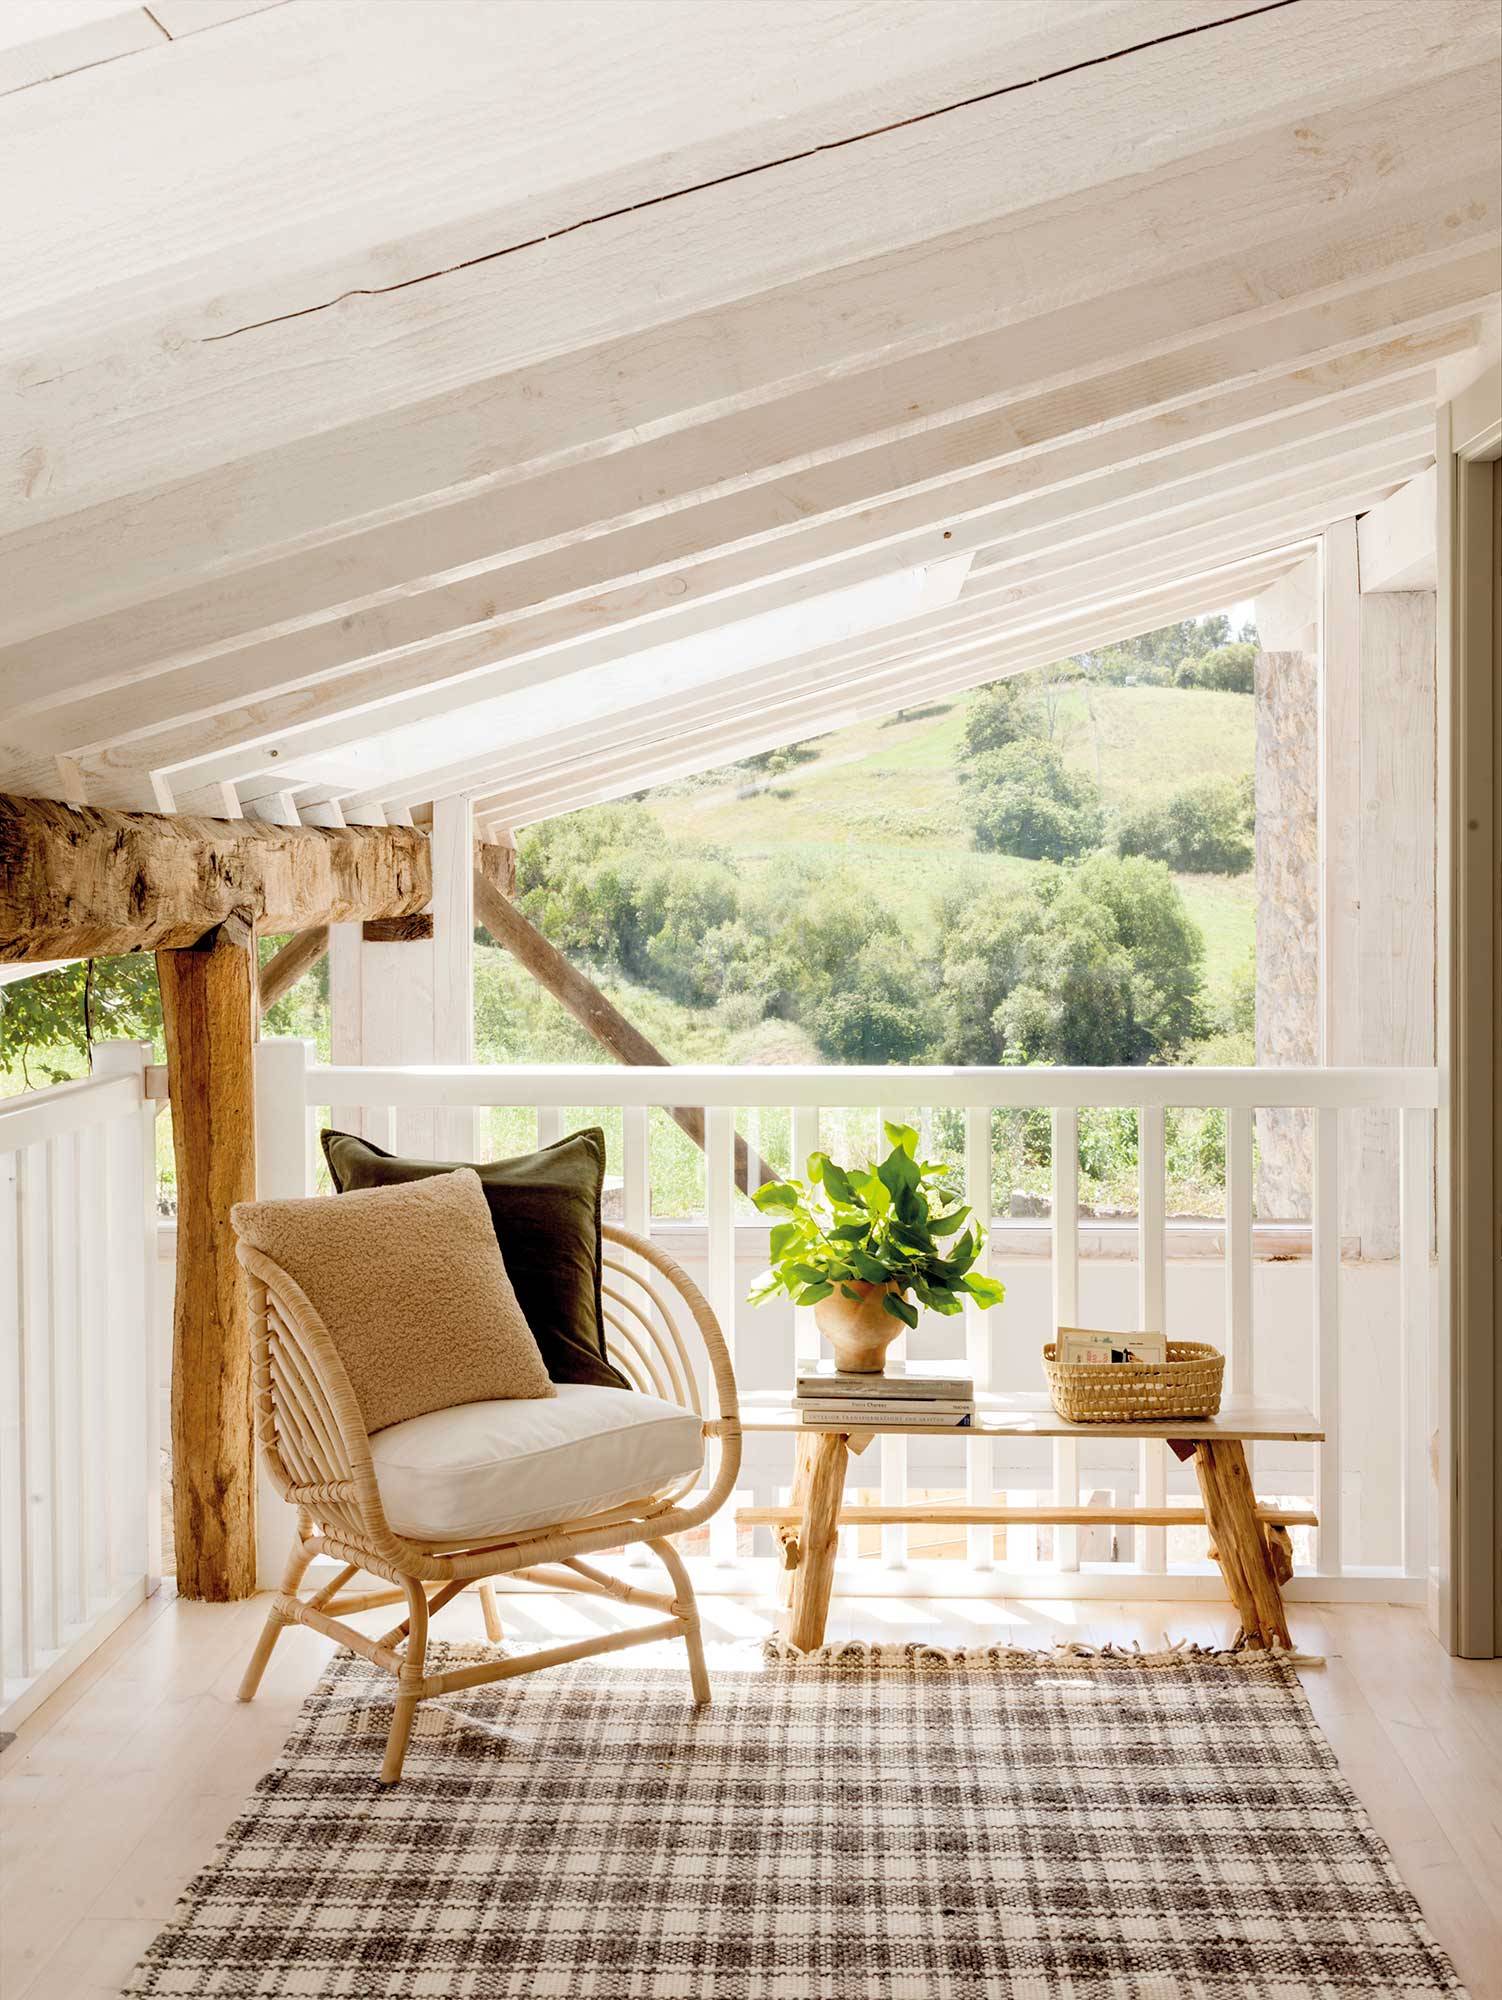 Terraza techada con sillón, banco y alfombra de cuadros.